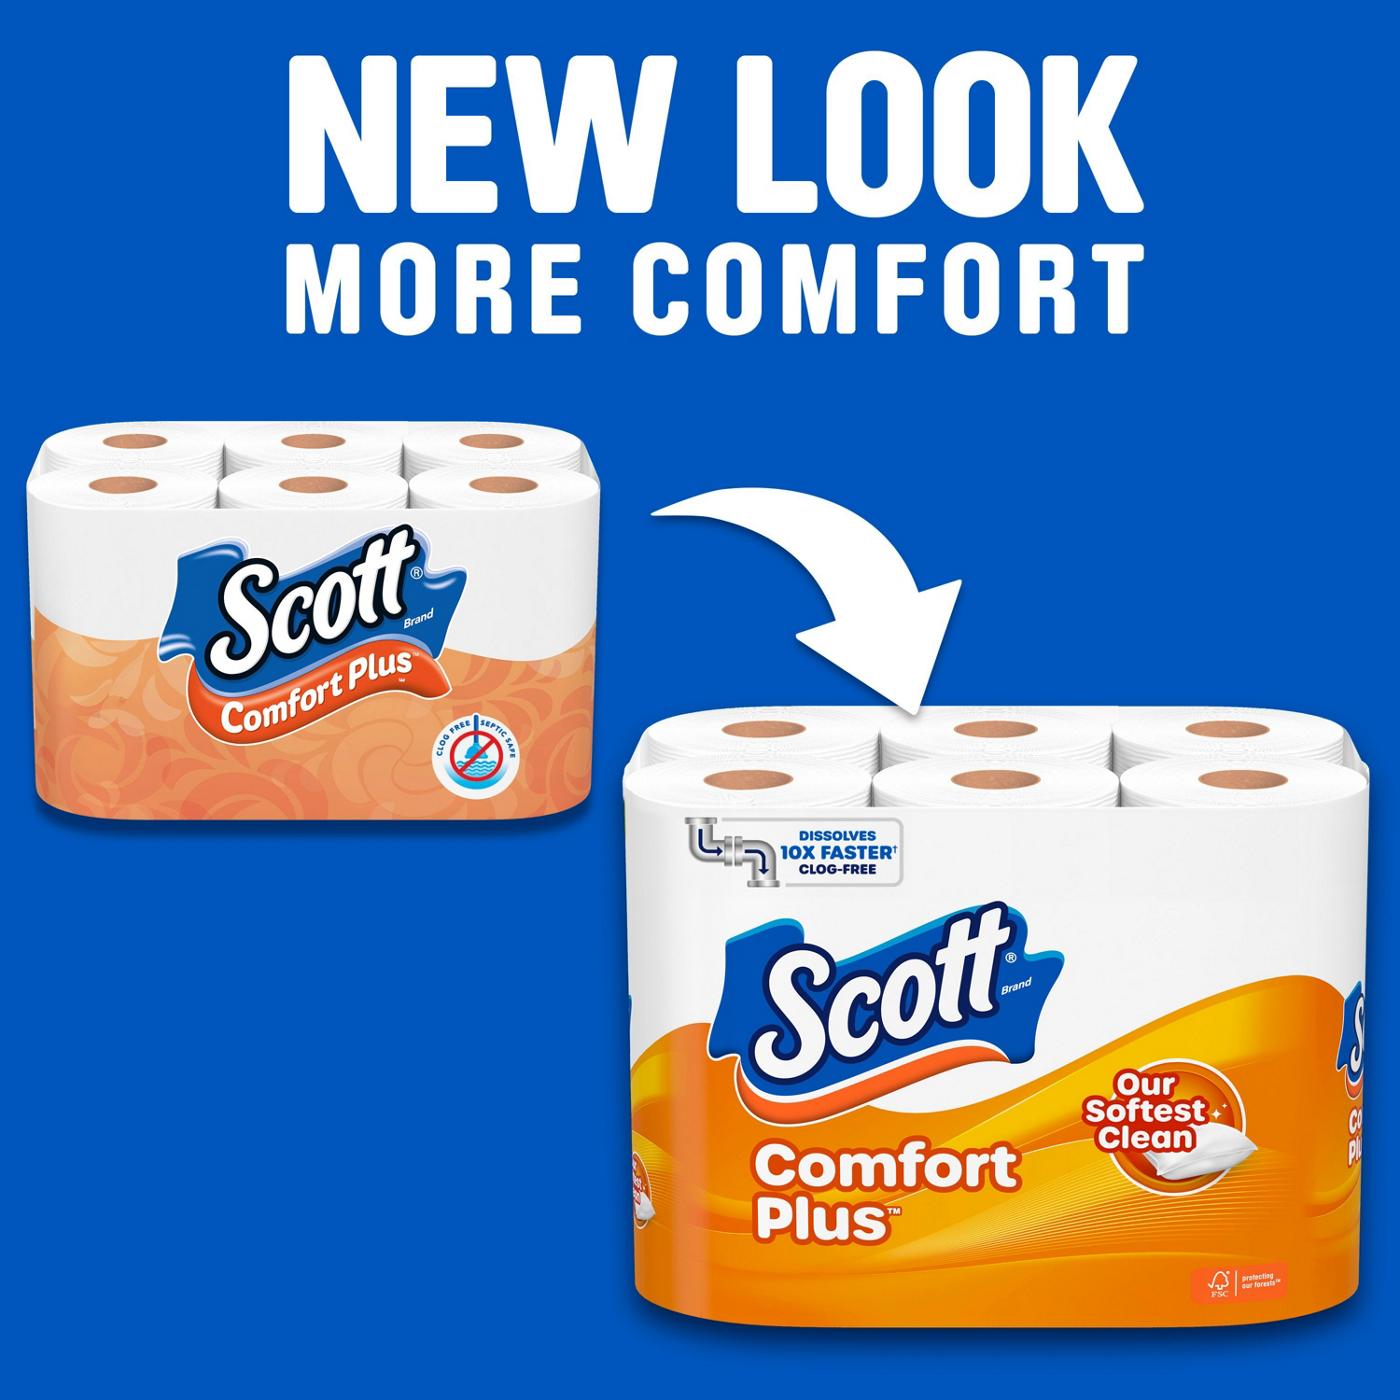 Scott Comfort Plus Toilet Paper; image 2 of 8